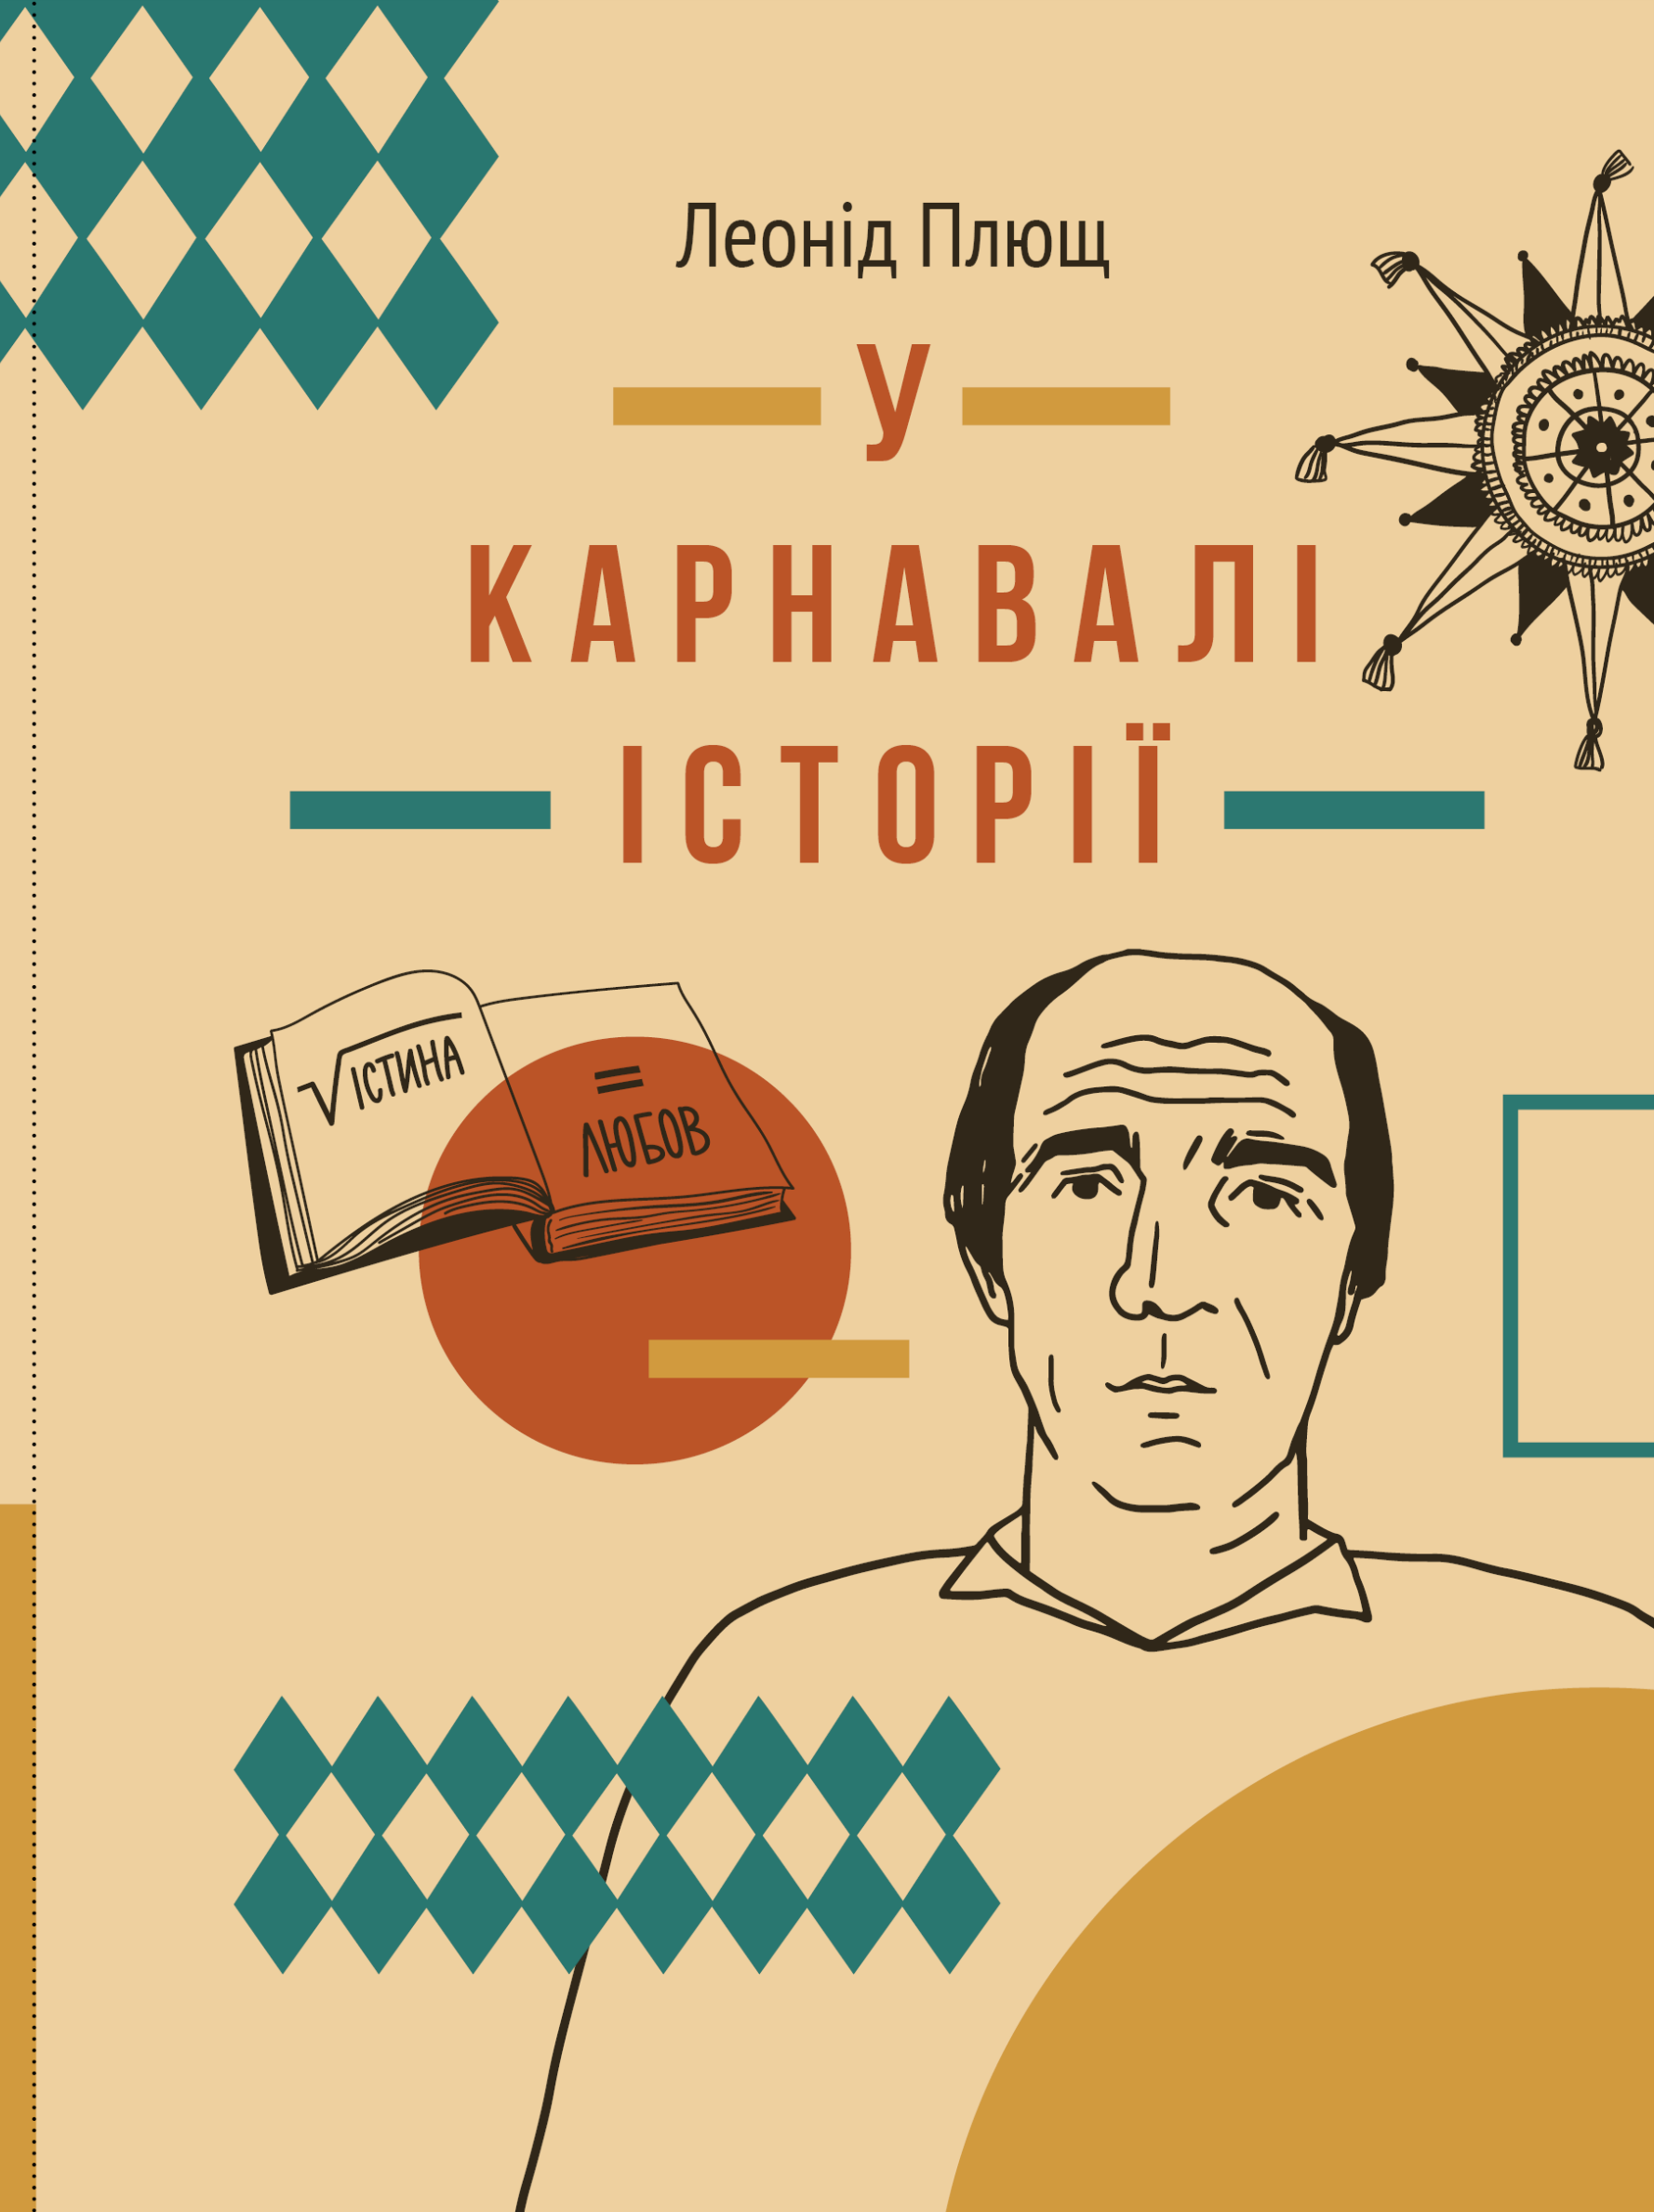 Не только Лавкрафт: какие новинки готовят украинские издательства до конца года 0